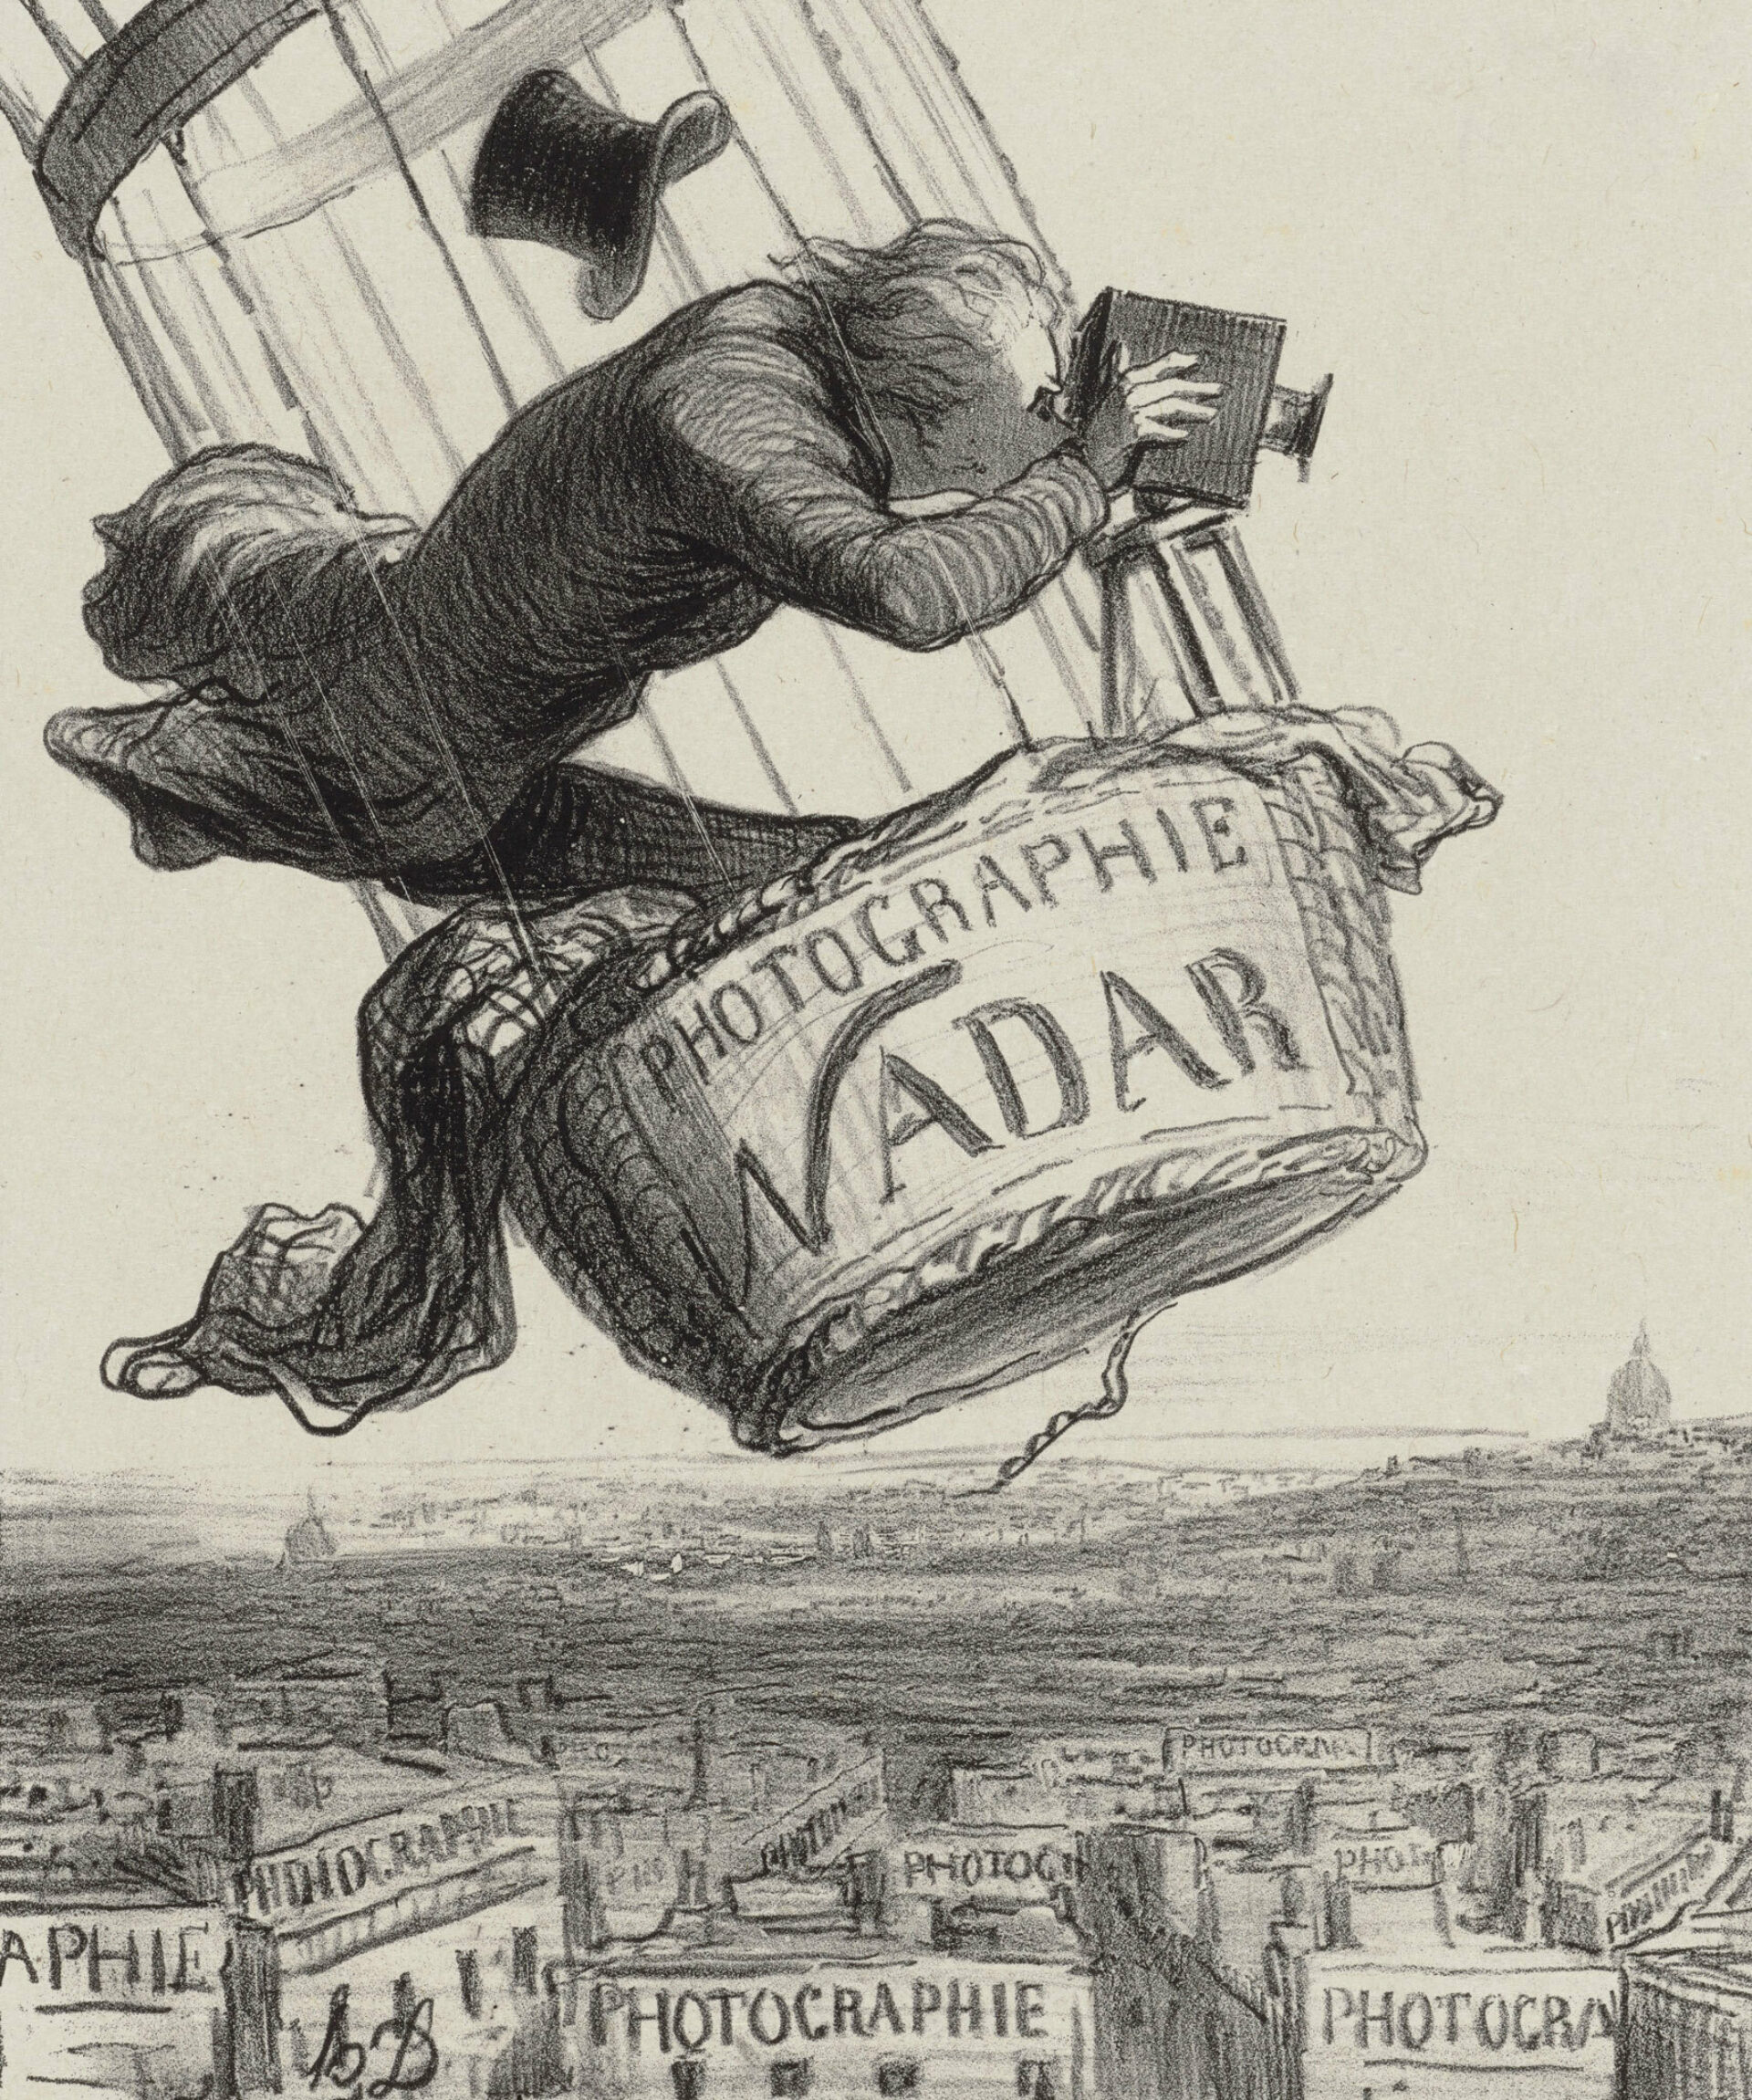 St presse daumier Nadar elevant la photographie a la hauteur de lart 1862